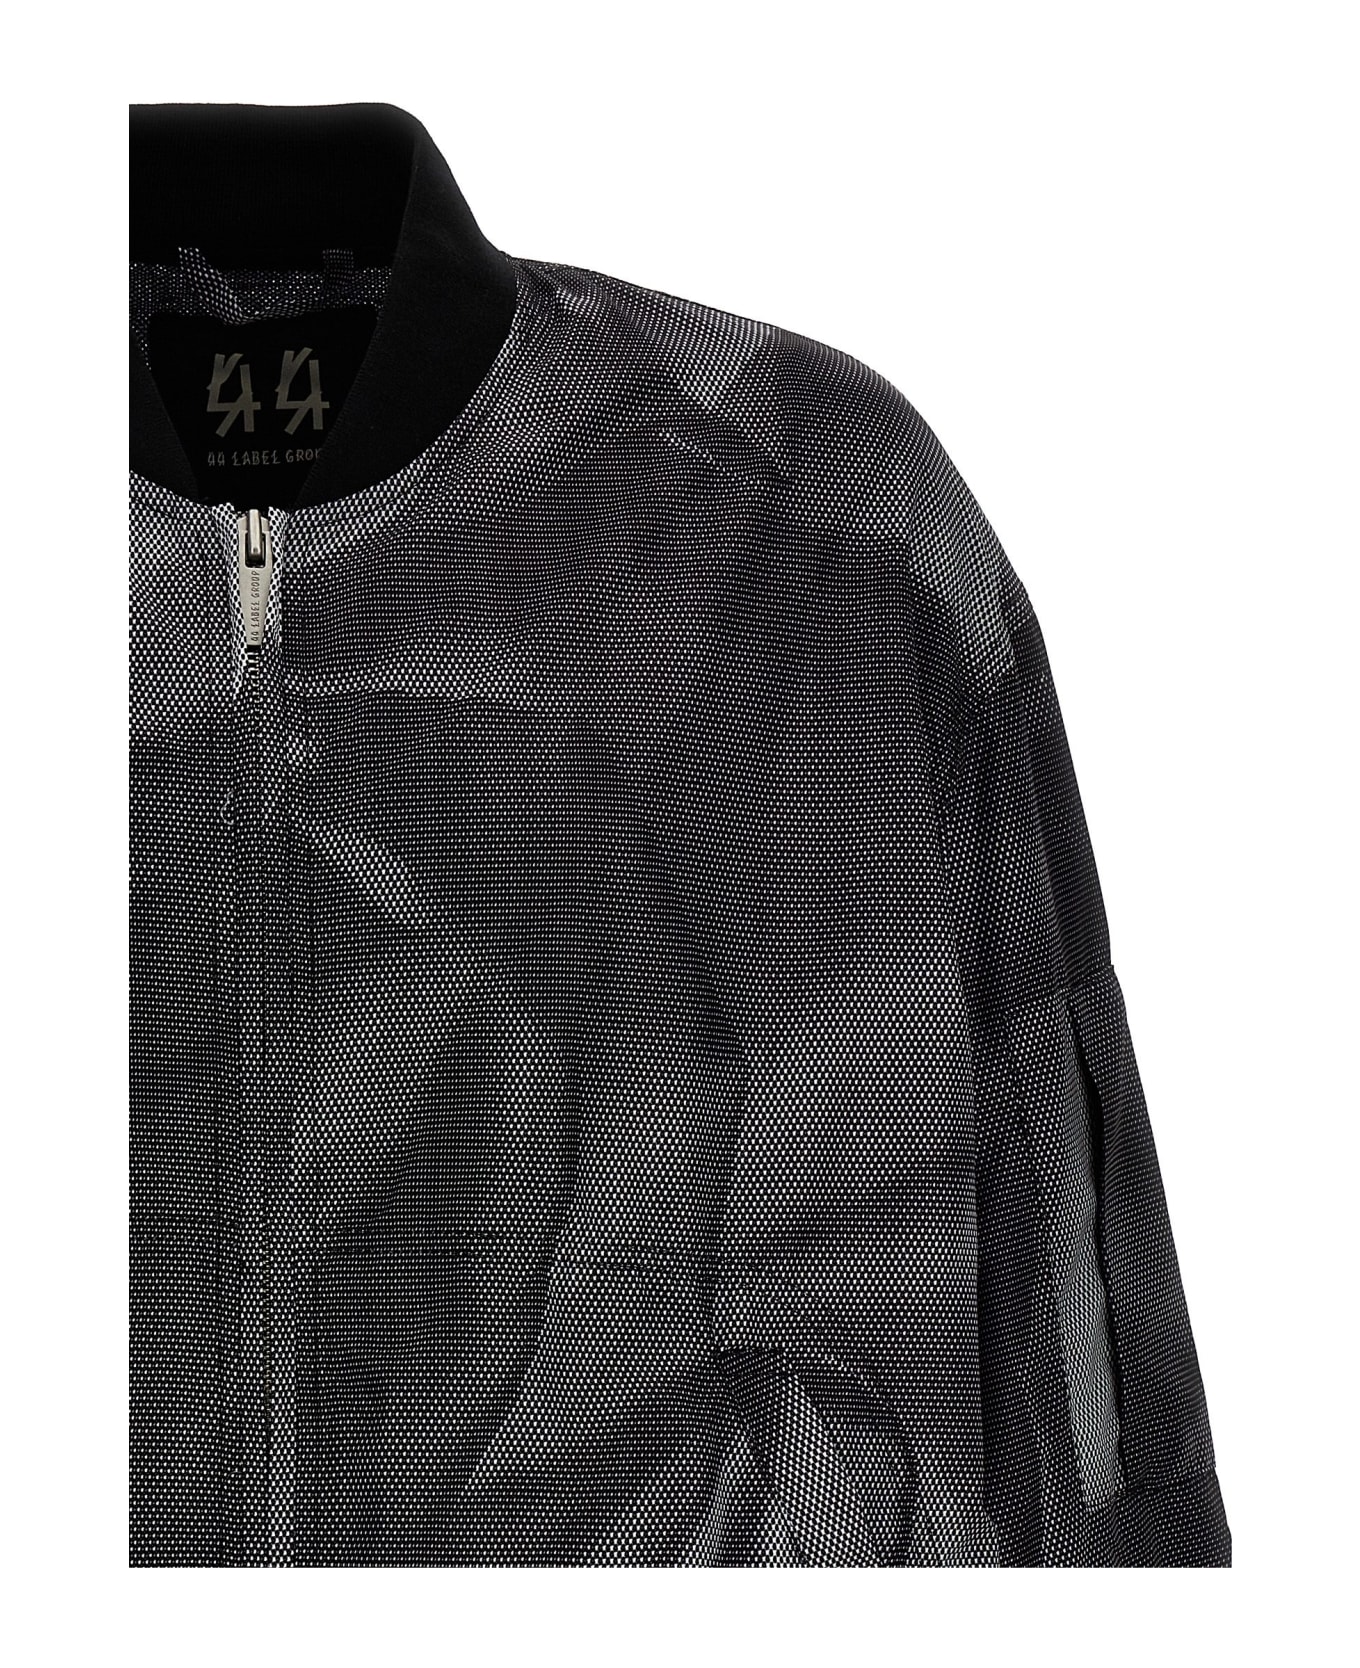 44 Label Group 'crinkle' Bomber Jacket - Black+ 44 crinkle